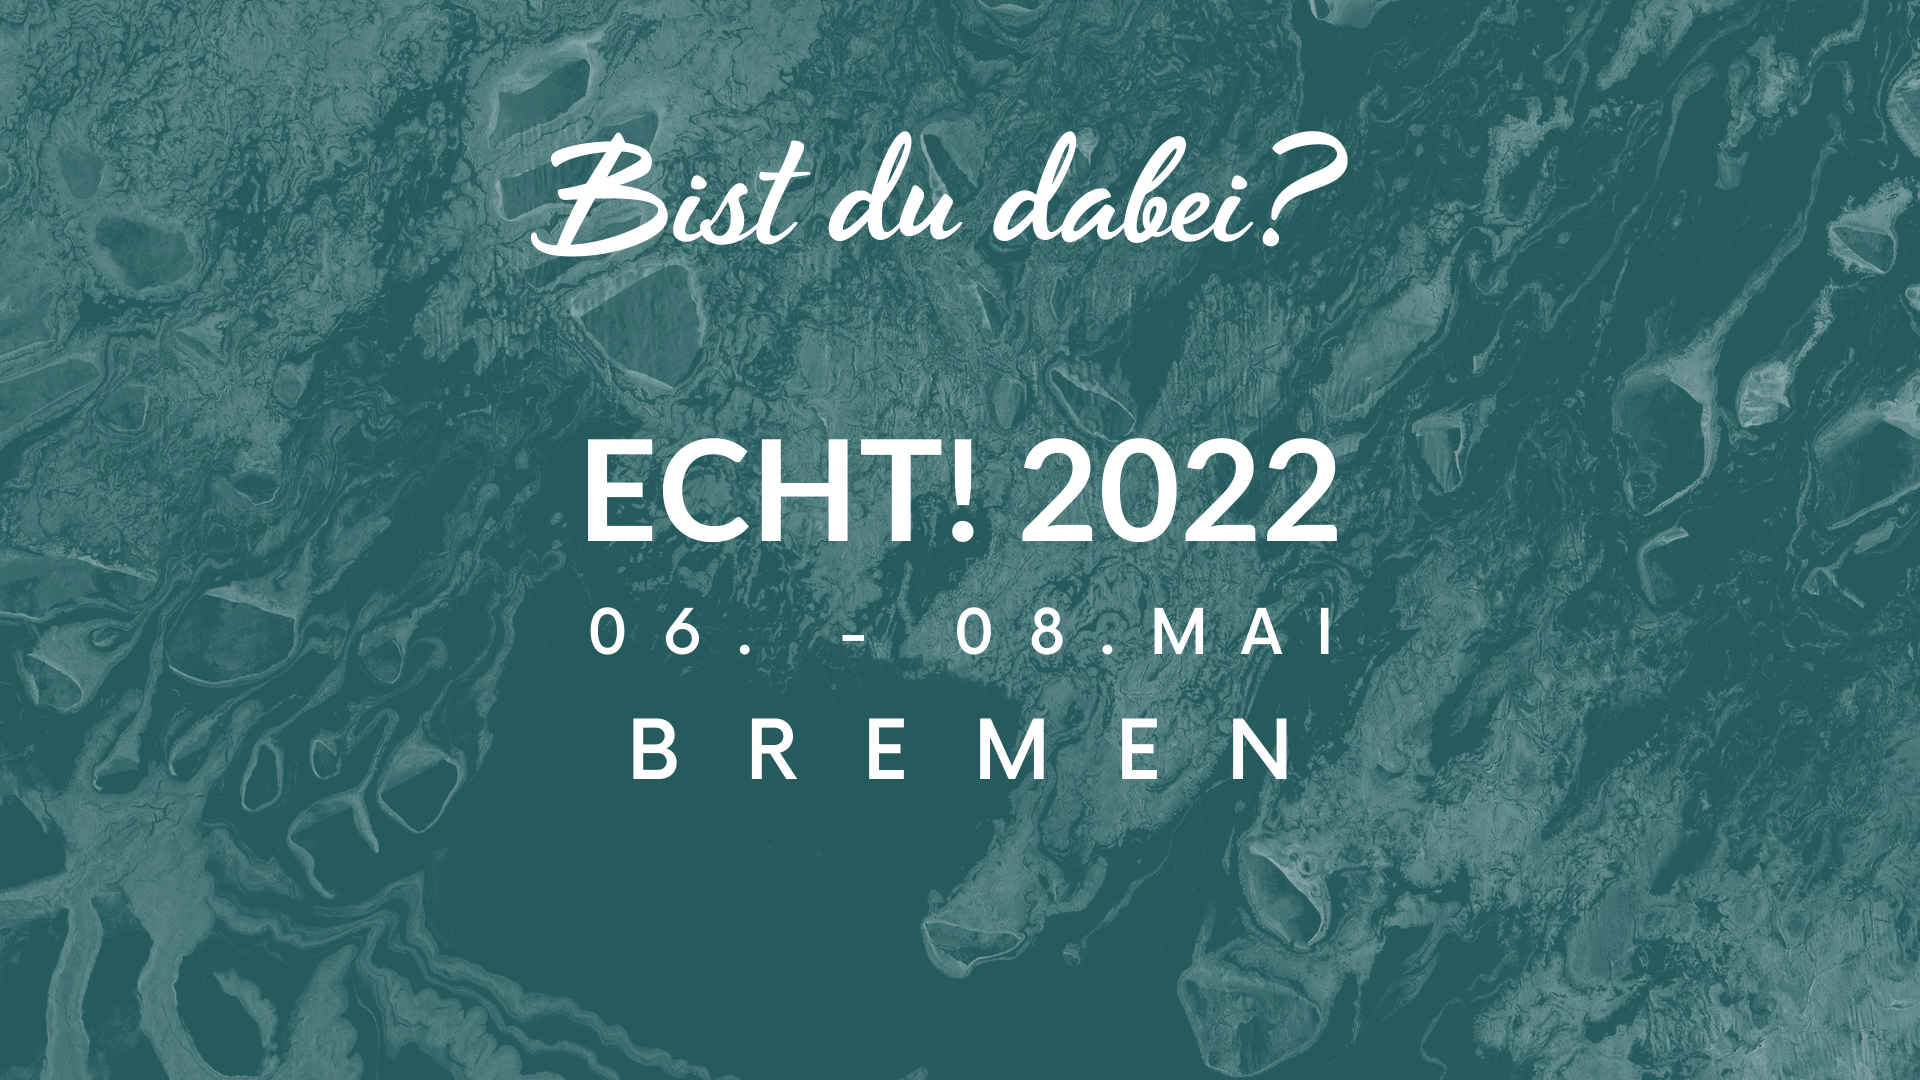 MV ECHT! 2022